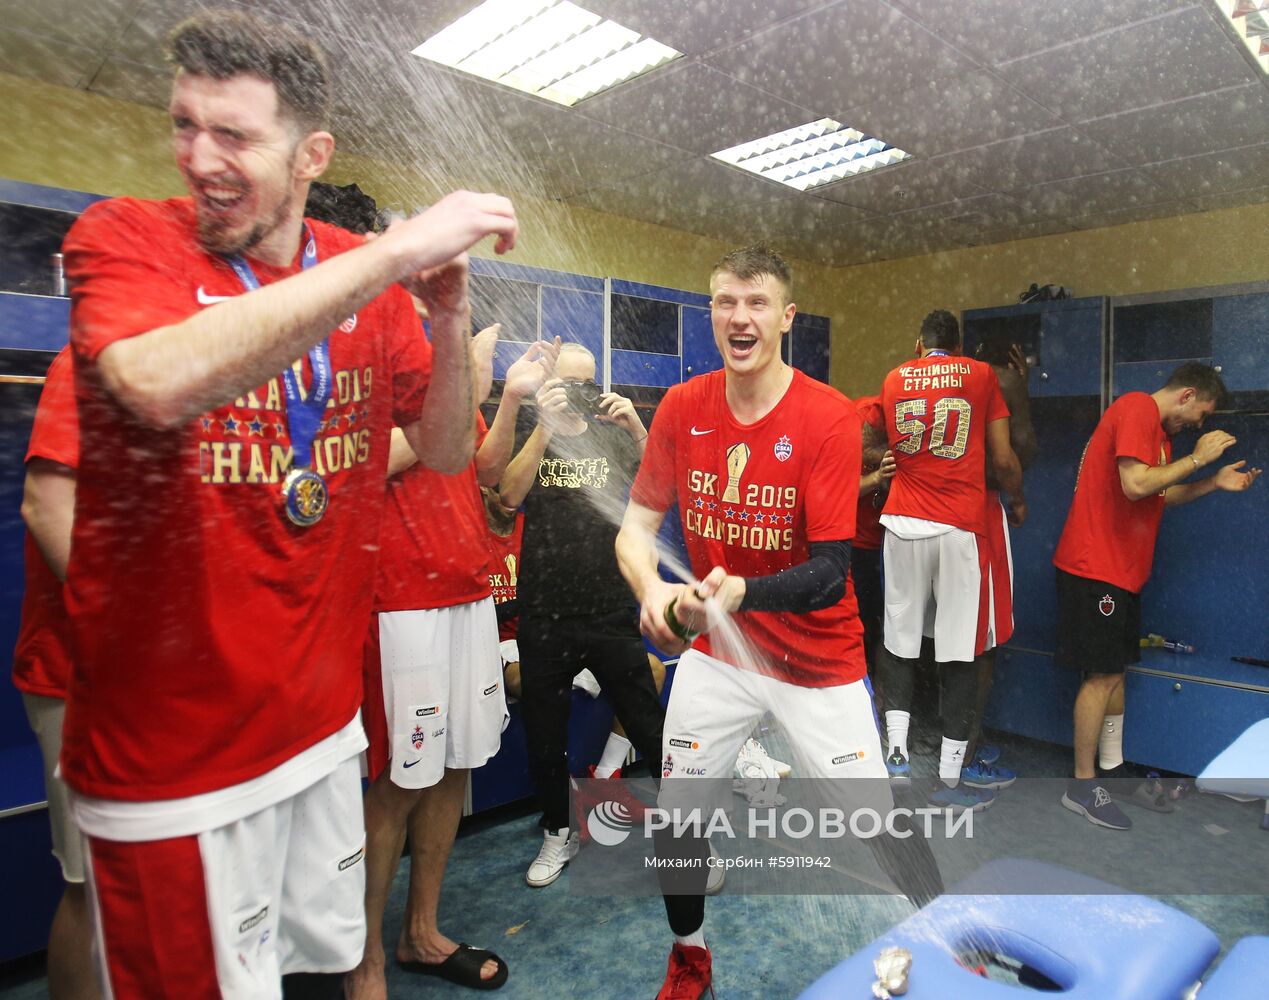 ПБК ЦСКА стал чемпионом Единой лиги ВТБ